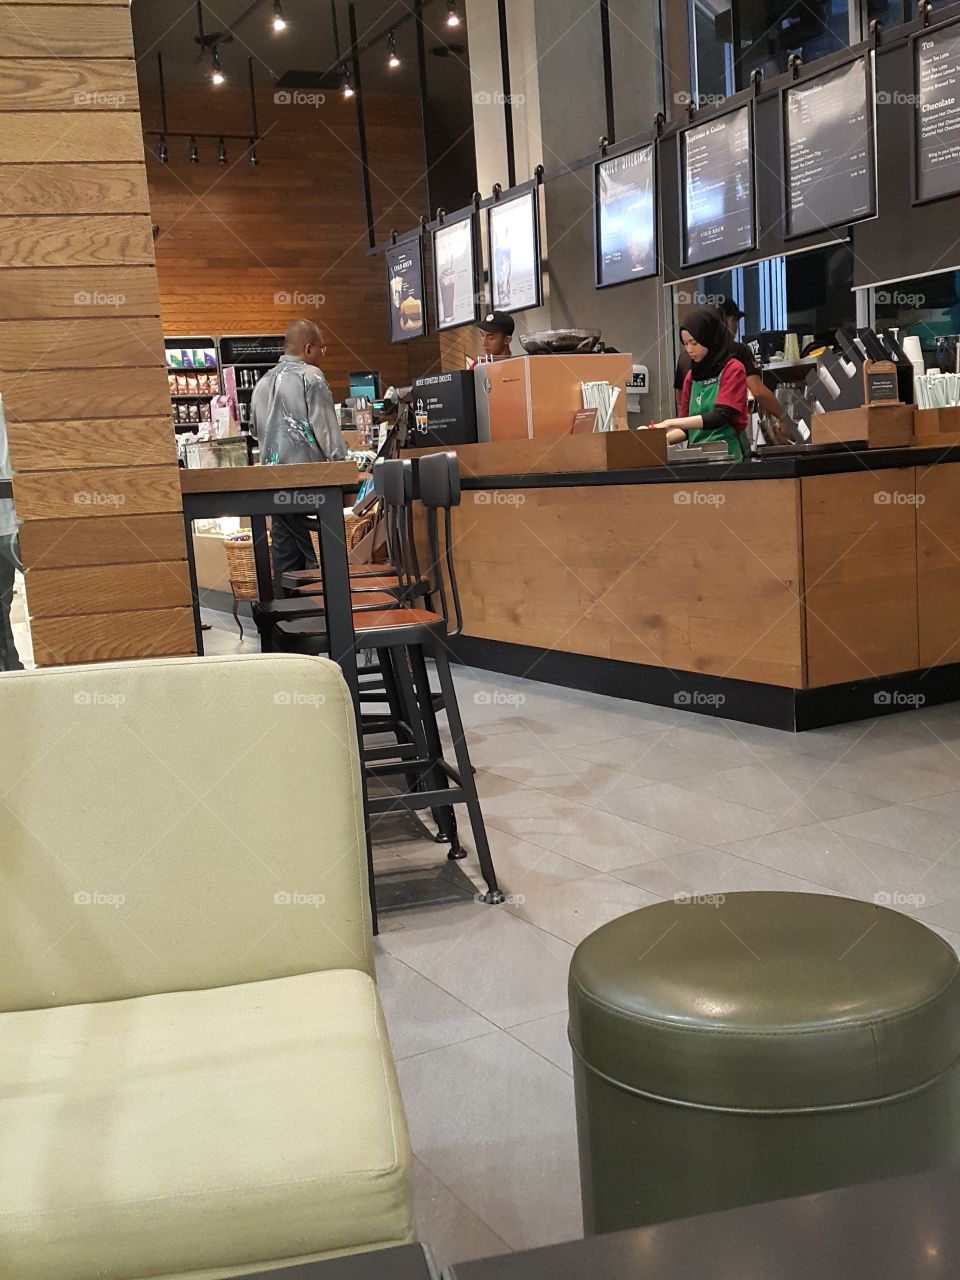 Starbucks Seremban Malaysi



Starbucks AEON MALL Seremban 2